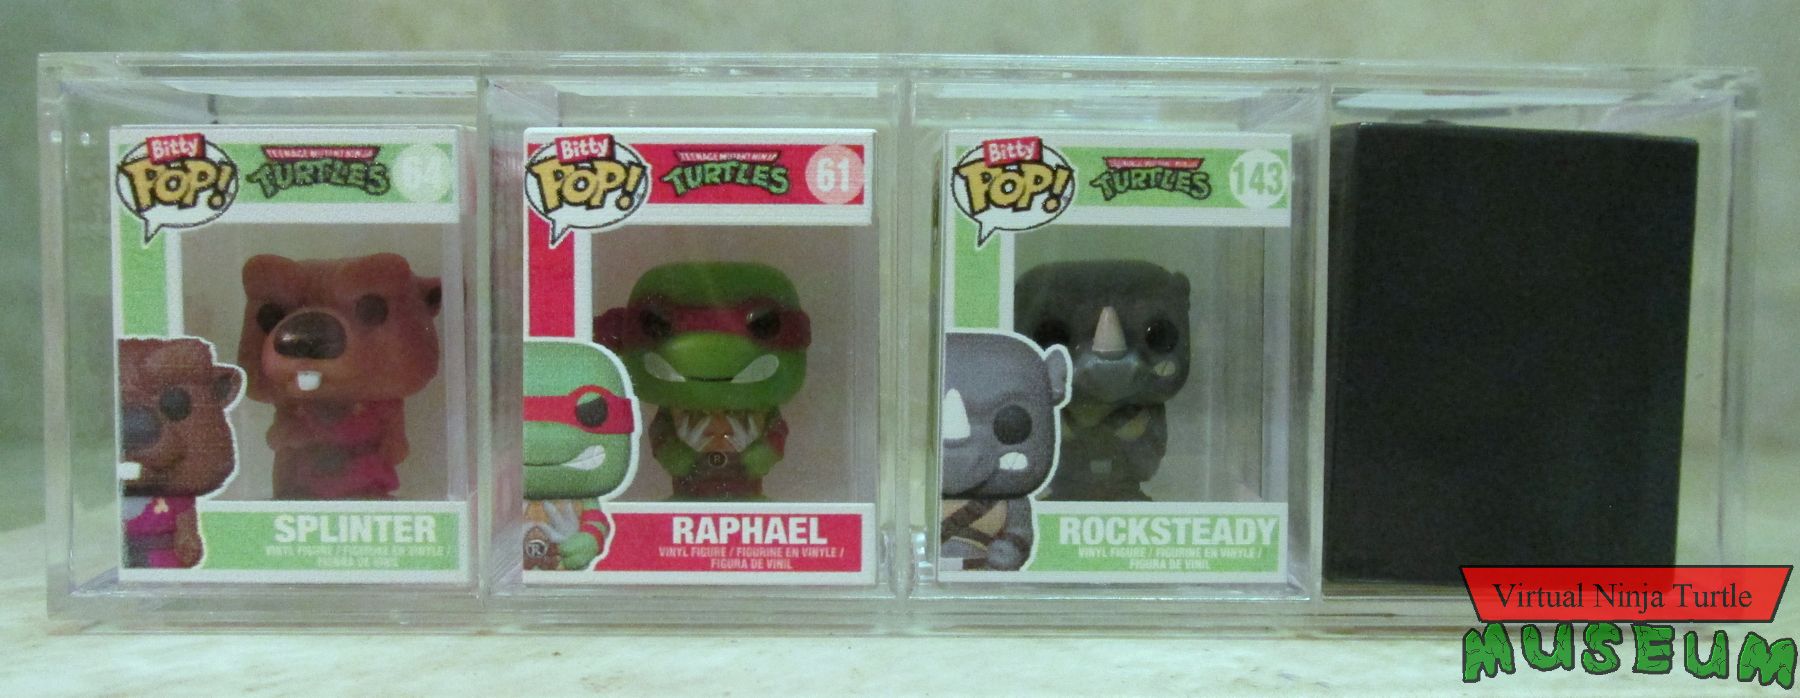 Pack One: Splinter, Raphael & Rocksteady